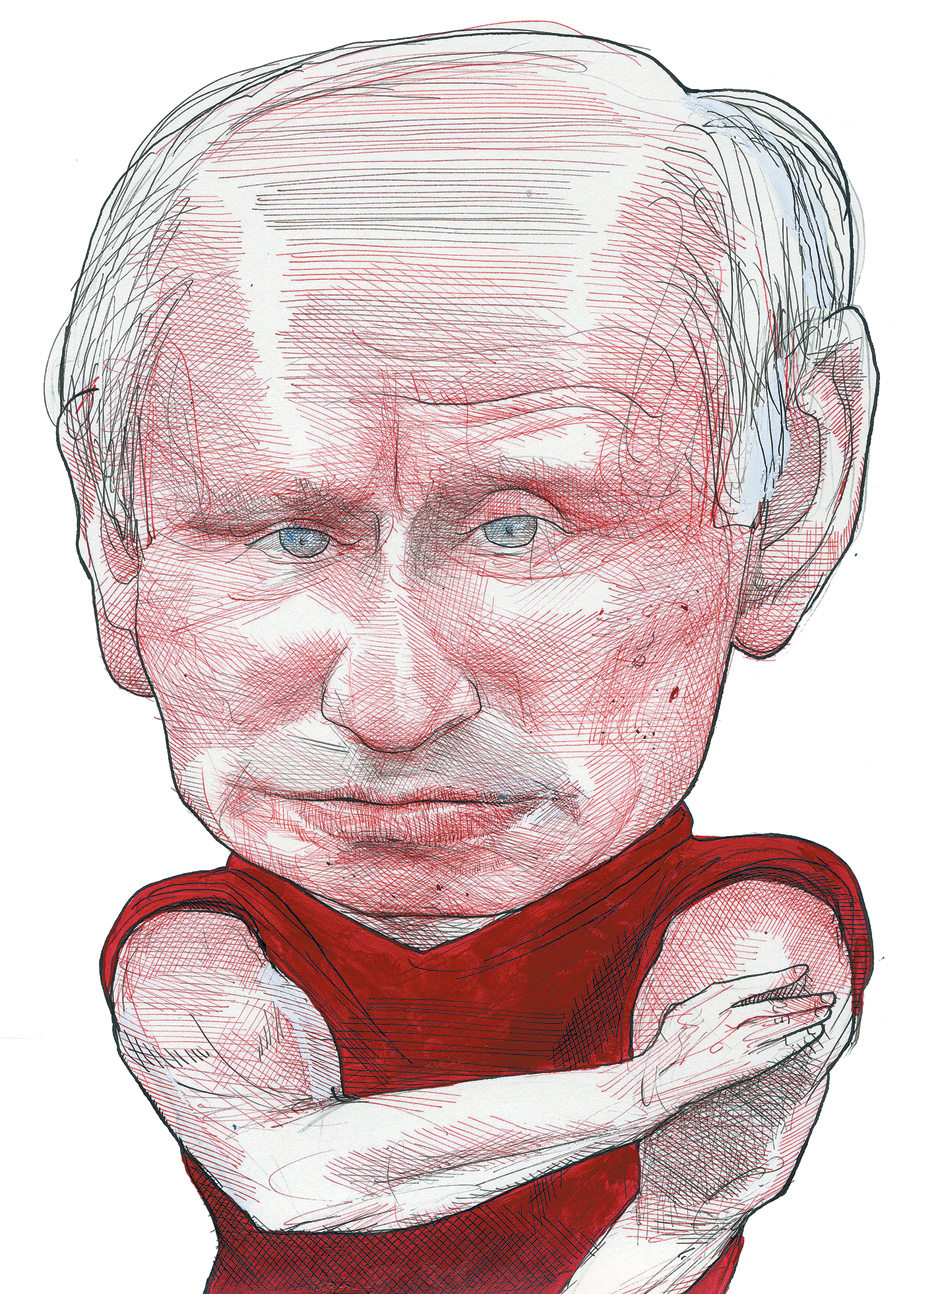 Putin's 'Goodfellas'